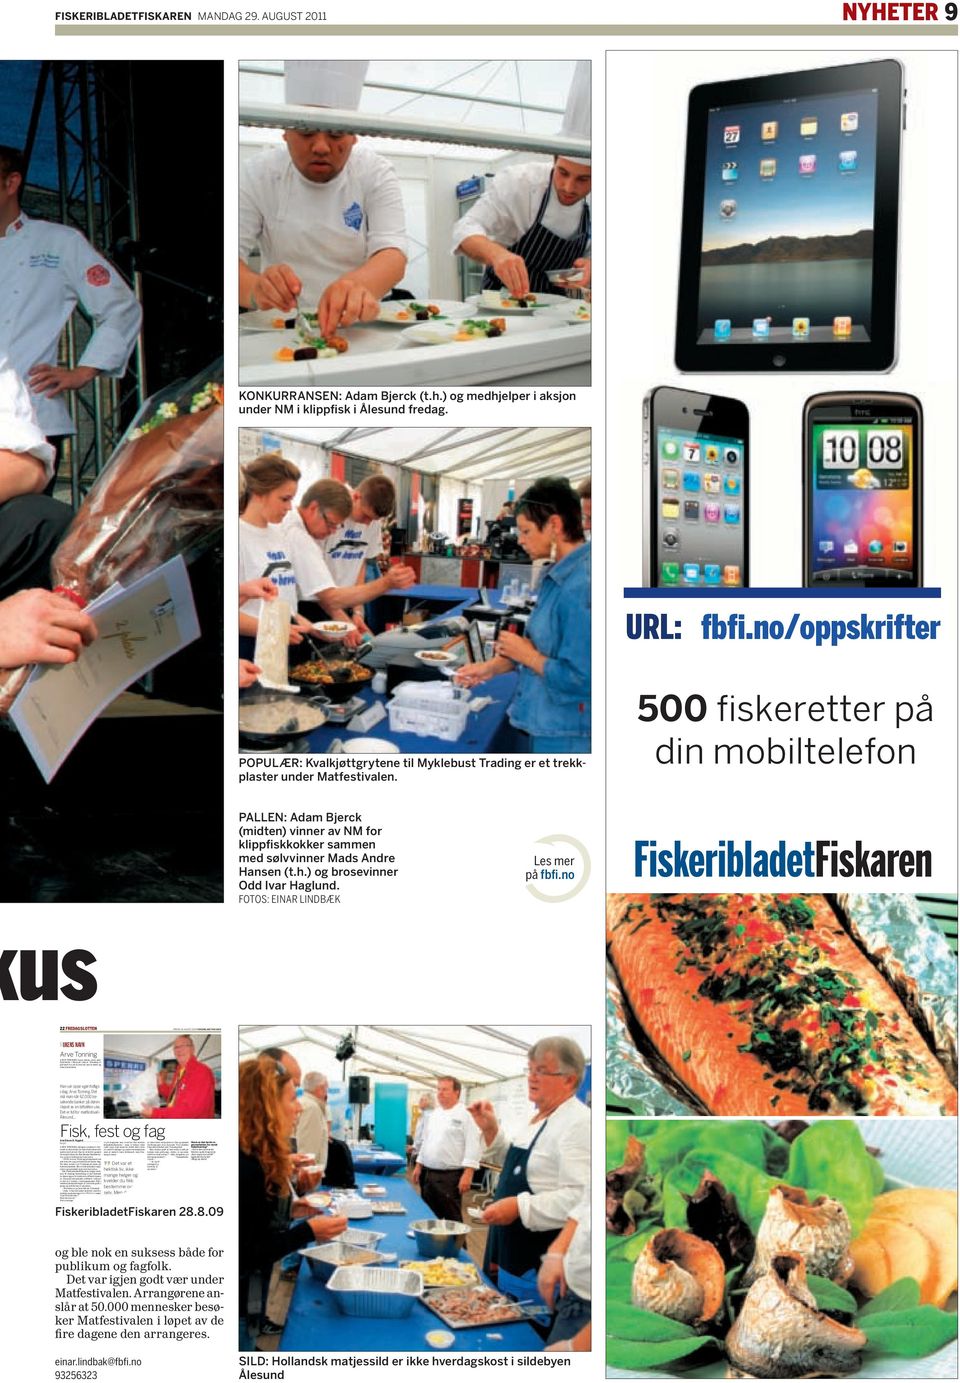 500 fiskeretter på din mobiltelefon PALLEN: Adam Bjerck (midten) vinner av NM for klippfiskkokker sammen med sølvvinner Mads Andre Hansen (t.h.) og brosevinner Odd Ivar Haglund.